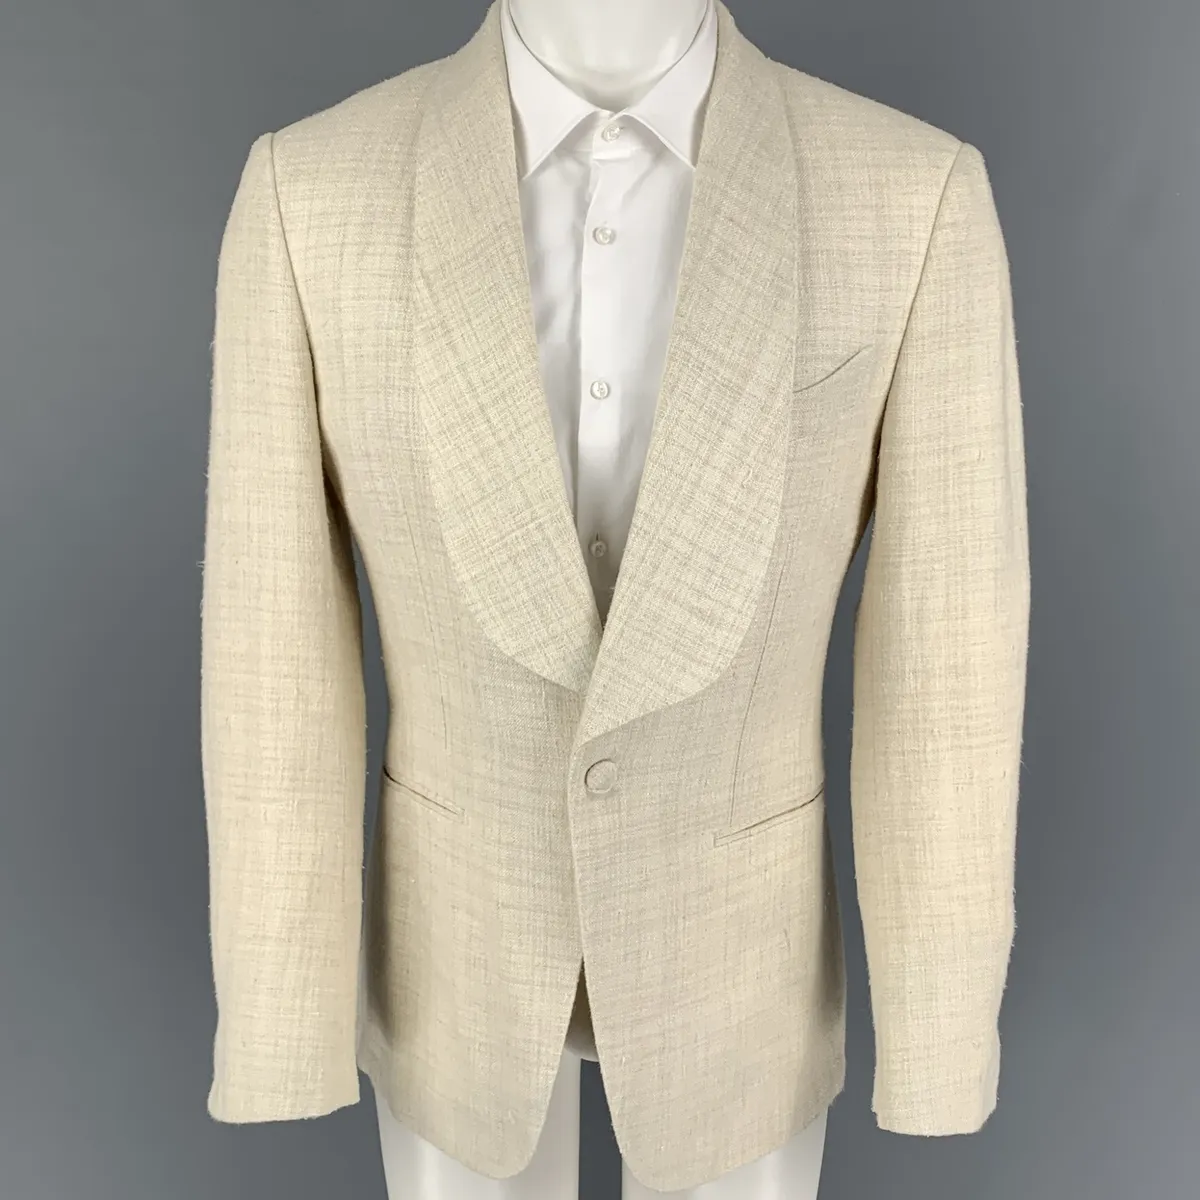 SUIT SUPPLY Size 40 Beige Textured Silk Blend Shawl Collar Sport Coat